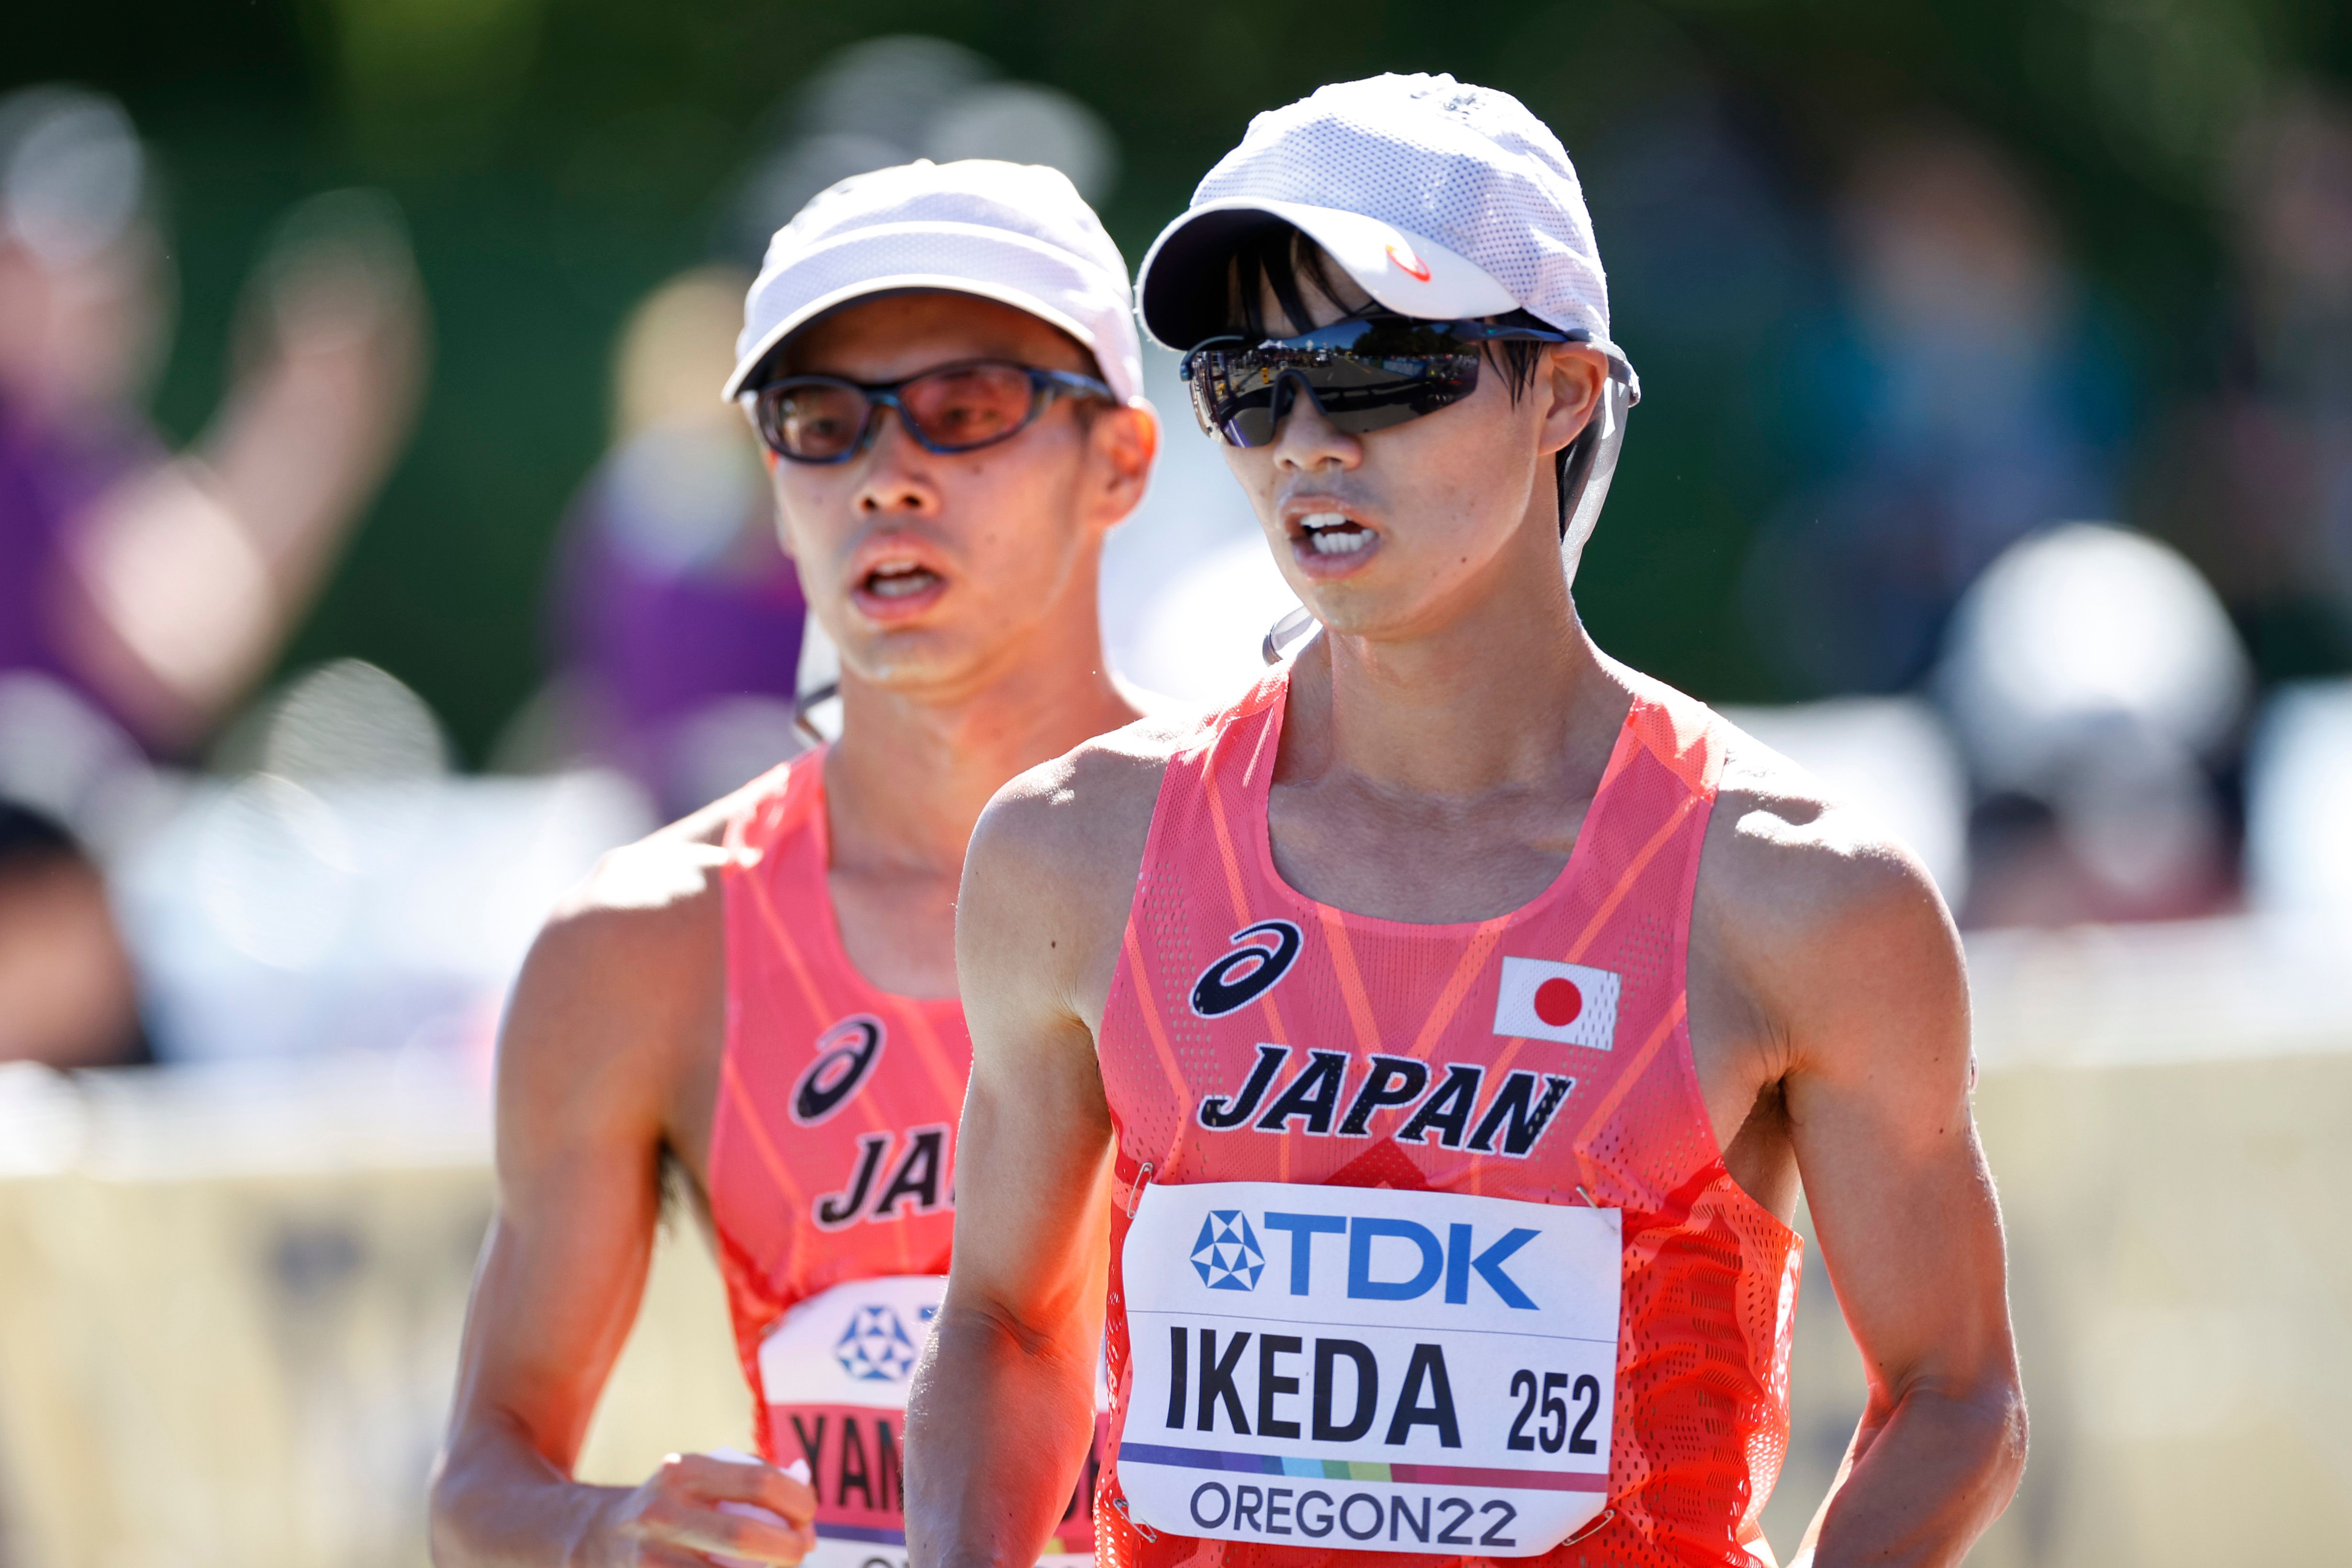 Toshikazu Yamanishi and Koki Ikeda at the World Athletics Championships Oregon22